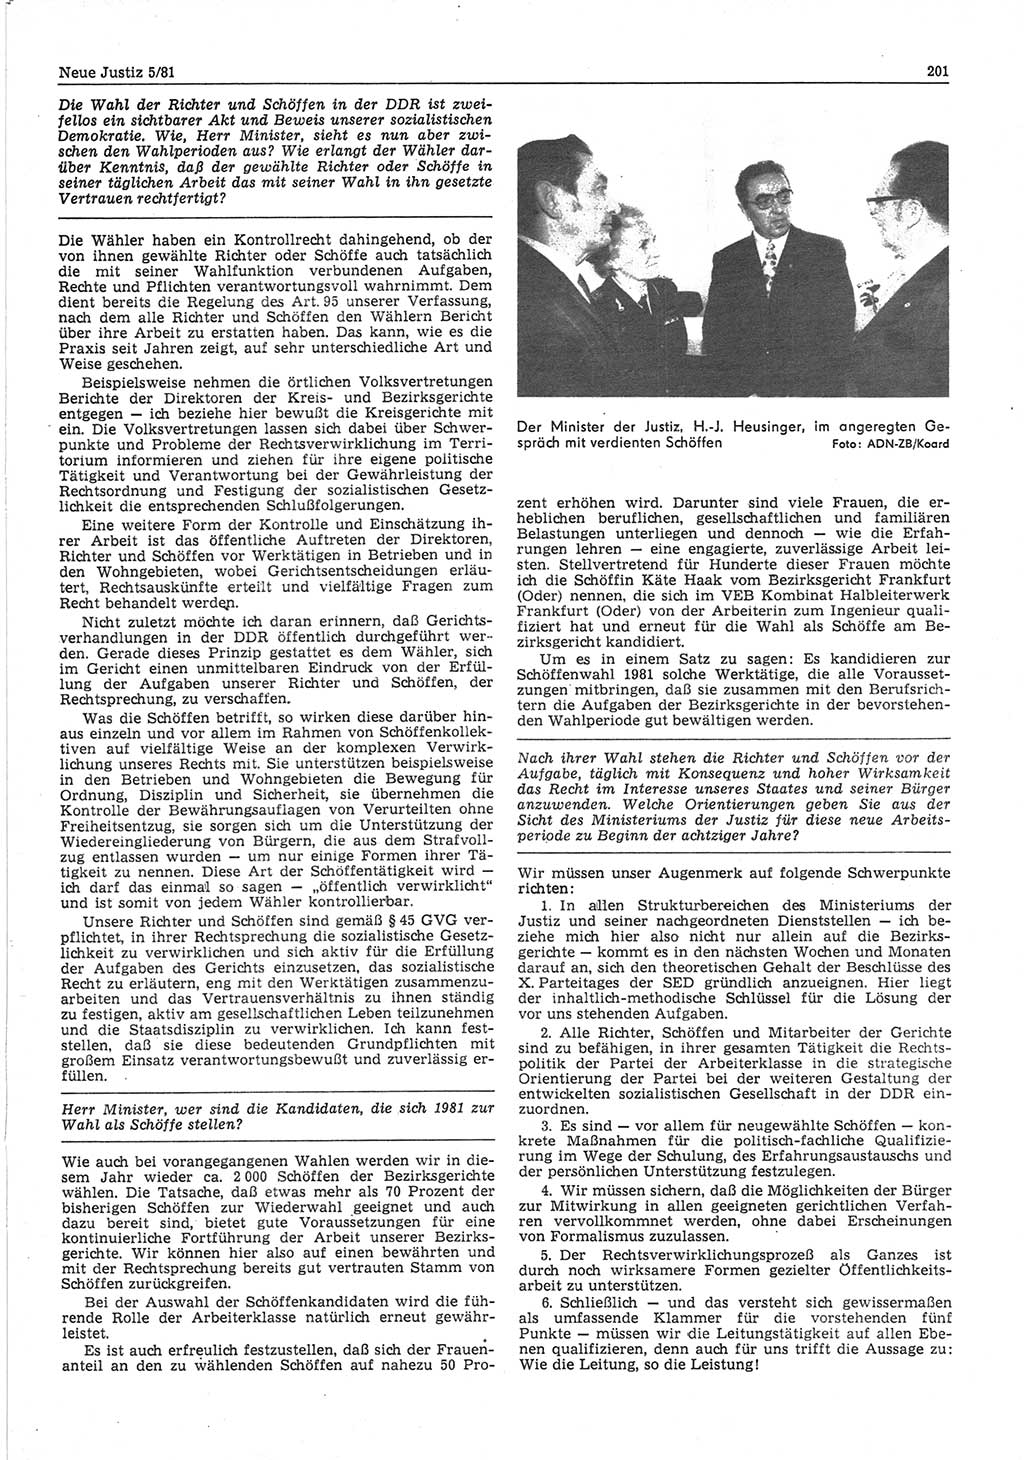 Neue Justiz (NJ), Zeitschrift für sozialistisches Recht und Gesetzlichkeit [Deutsche Demokratische Republik (DDR)], 35. Jahrgang 1981, Seite 201 (NJ DDR 1981, S. 201)